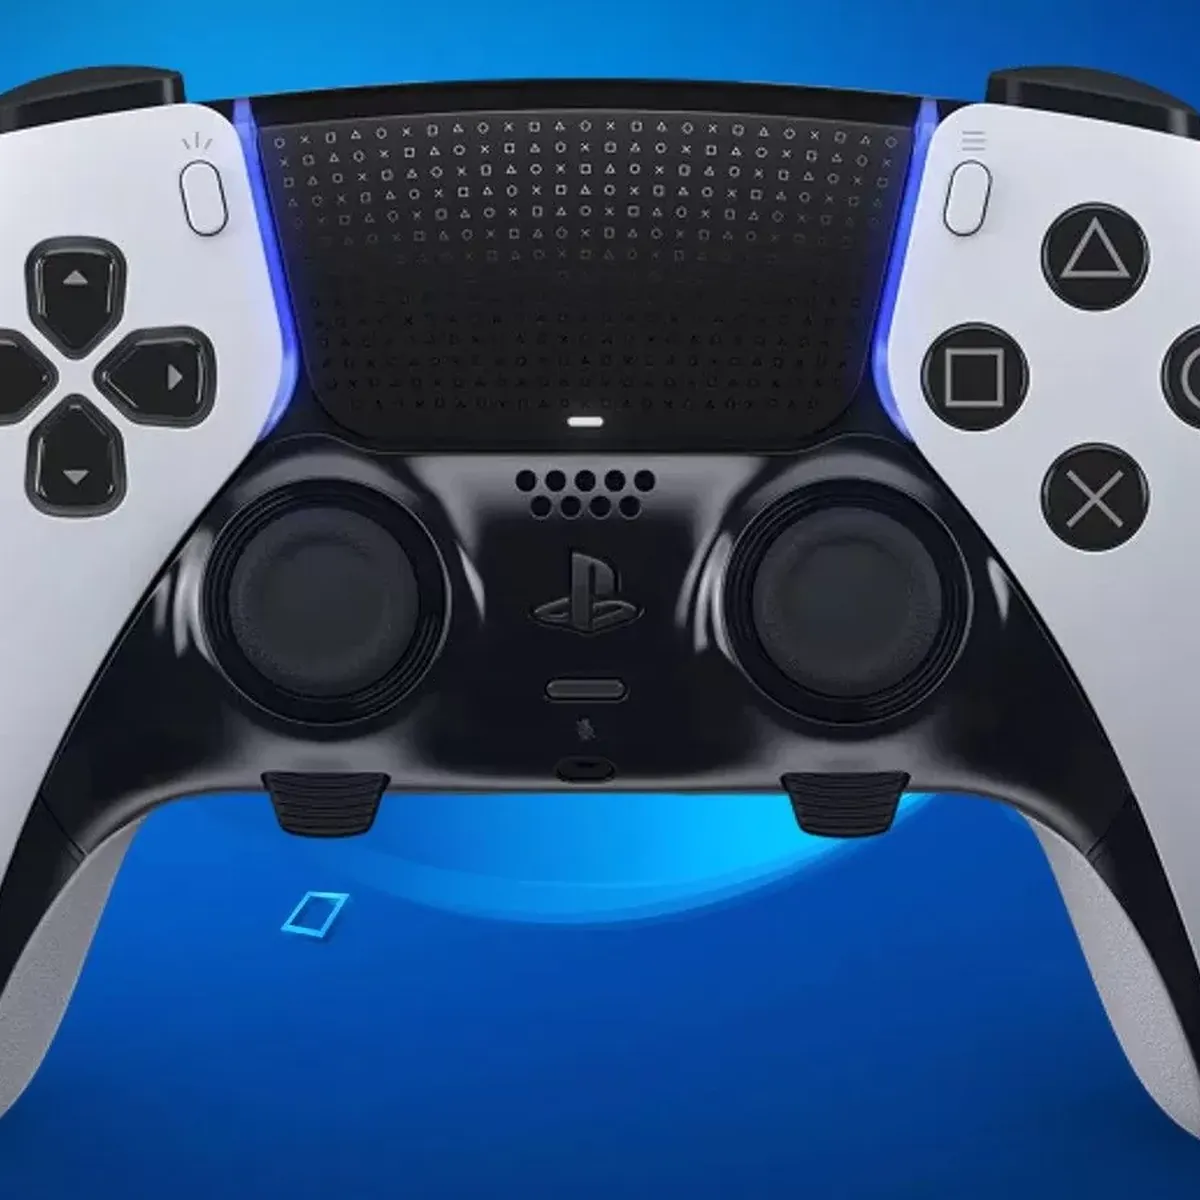 Tu consola PlayStation 5 ya tiene el mando Pro que se merece. Y en oferta:  videojuegos a otro nivel con el DualSense Edge